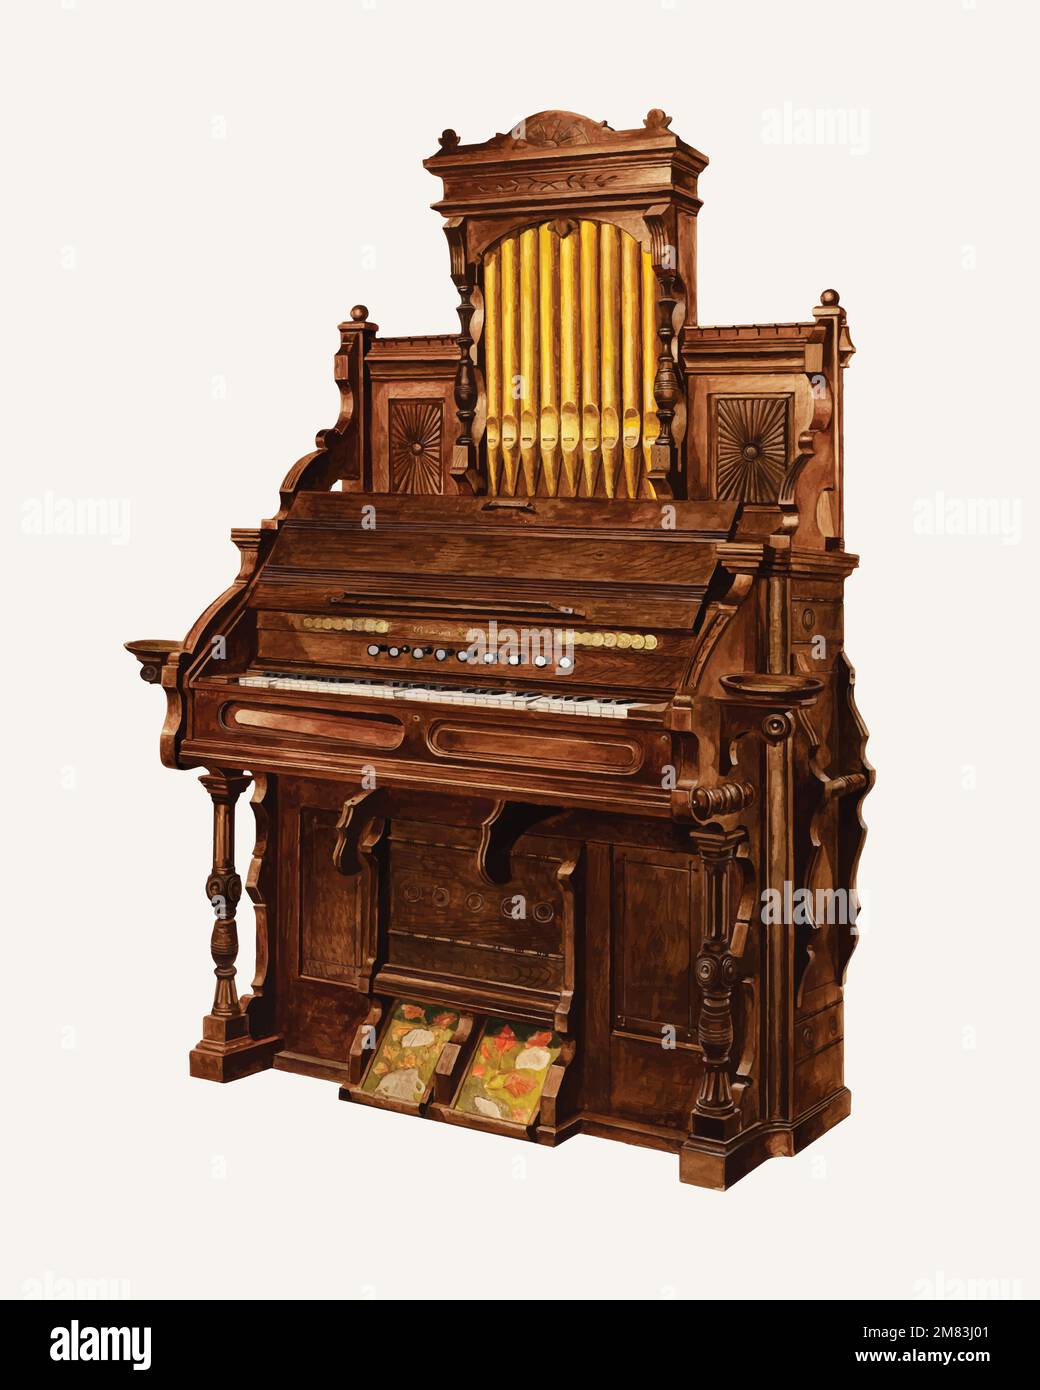 Vecteur d'illustration de l'orgue de l'église, remixé à partir de l'œuvre d'Amos C. Brinton Illustration de Vecteur